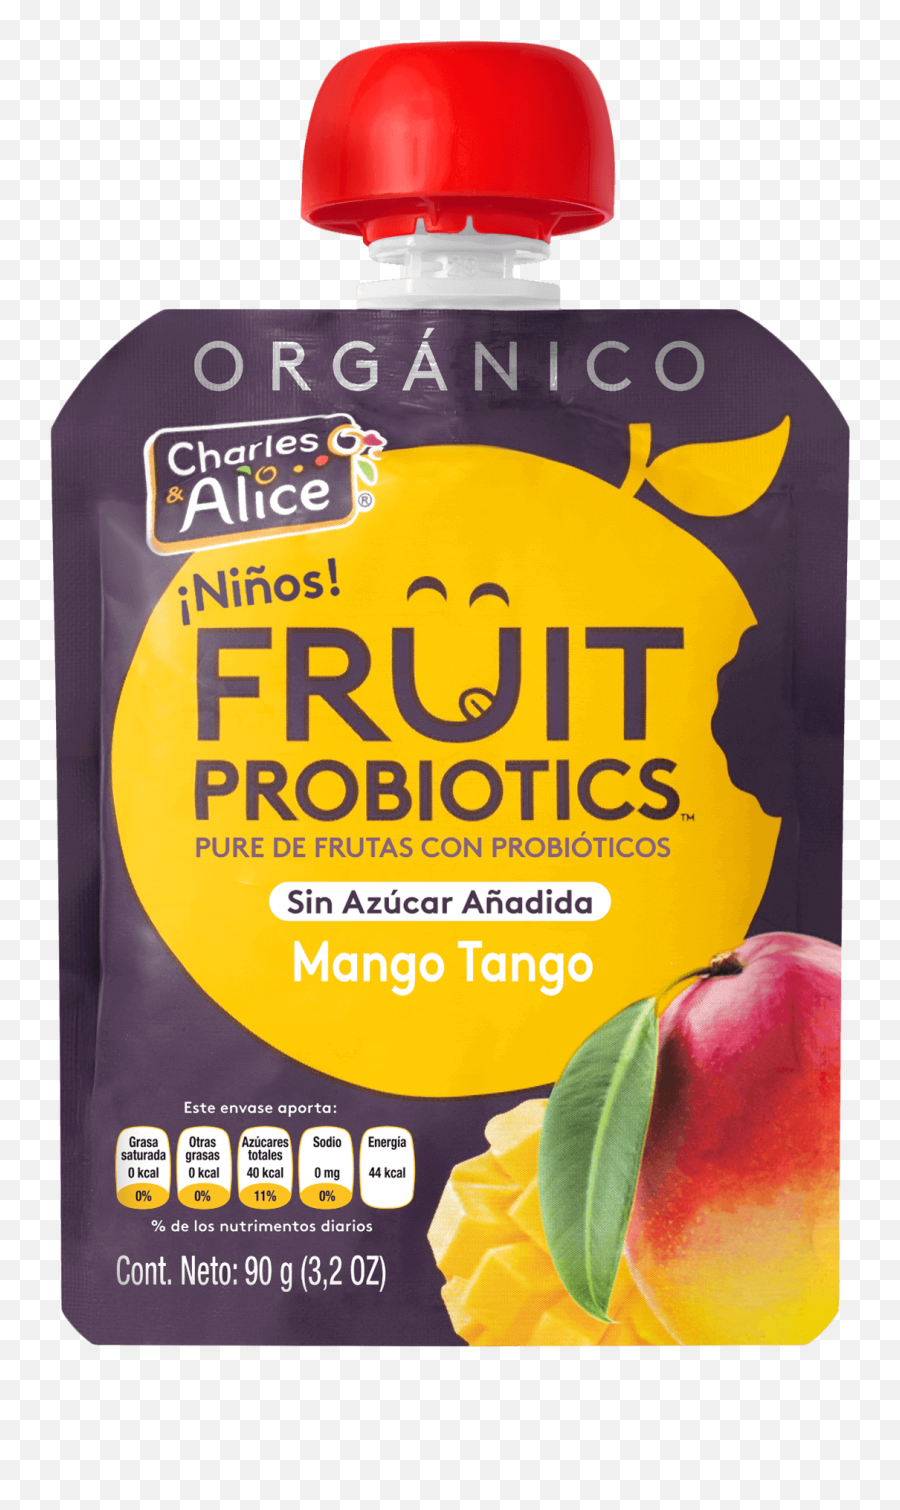 Charles Alices Fruit Probiotics - Diet Food Emoji,Emojis Frutas